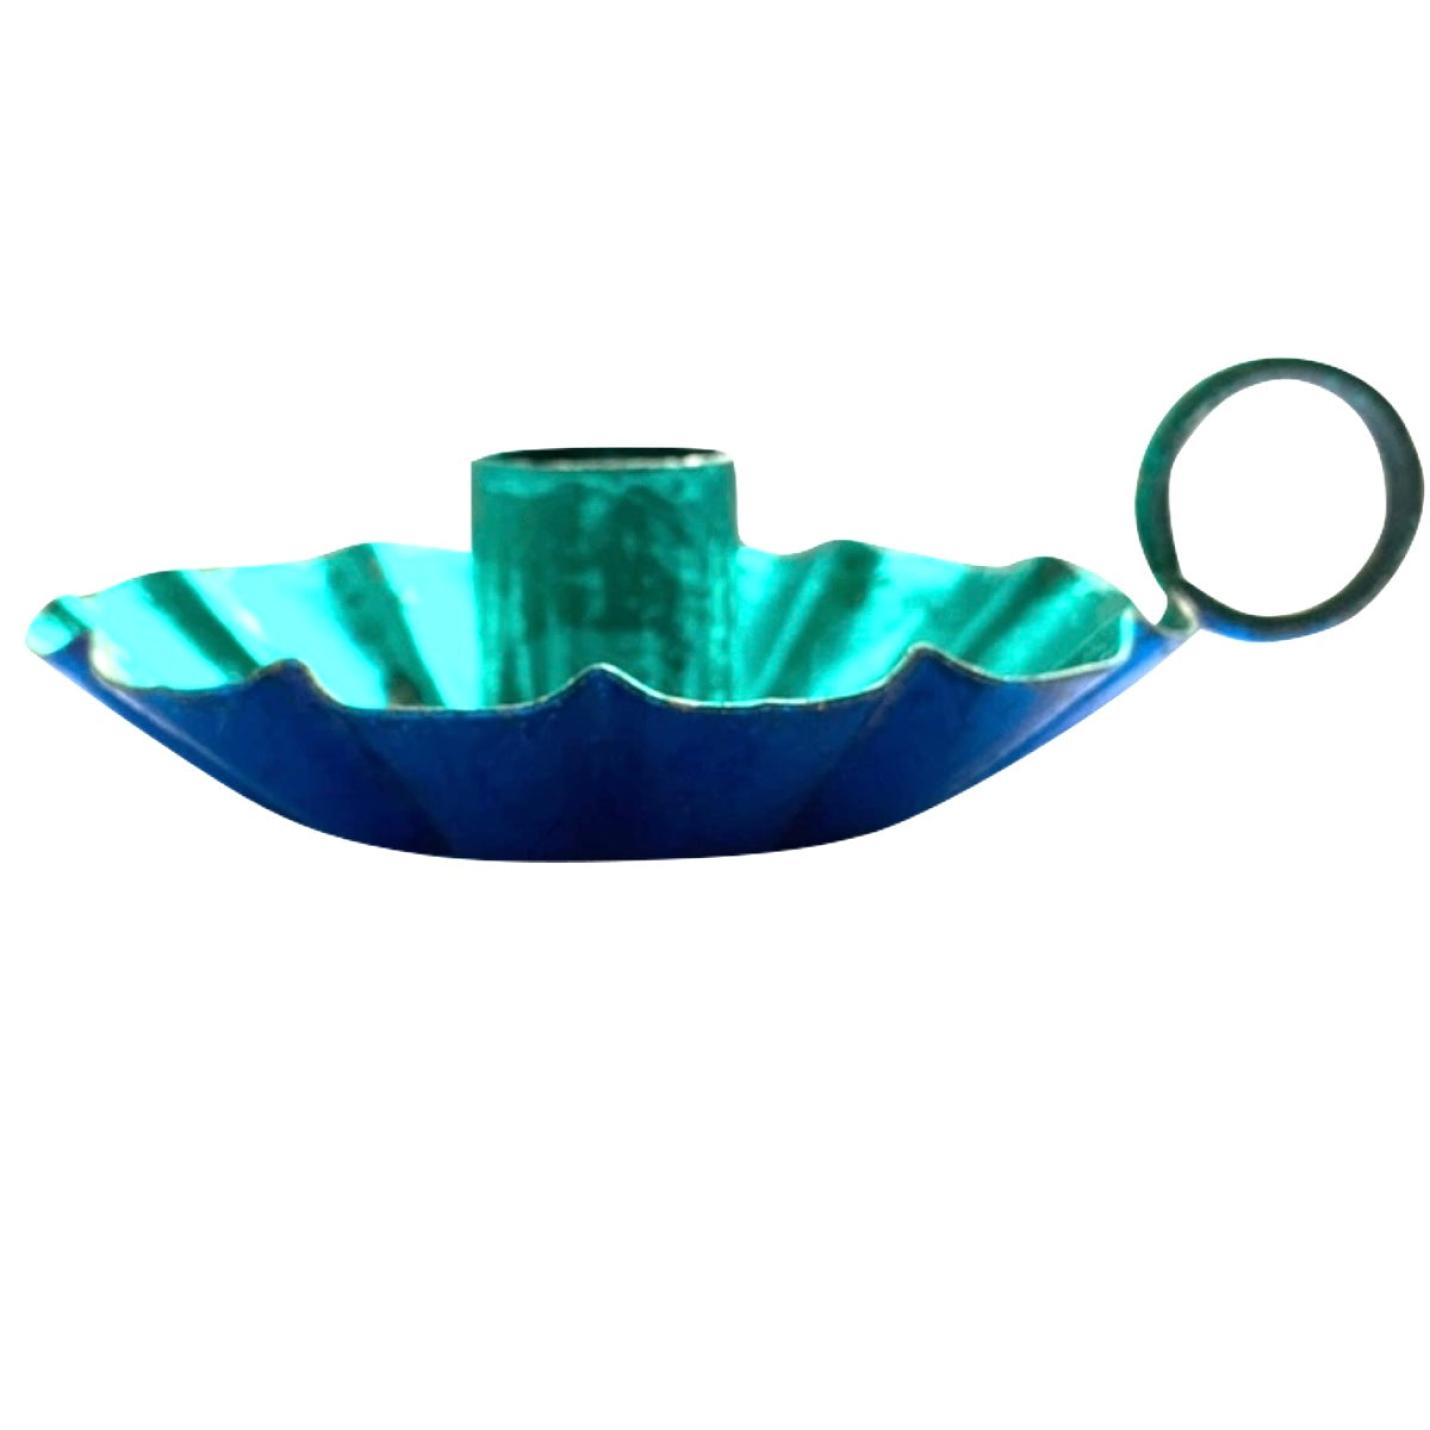 Kandelaar Flower aqua / kobalt blauw metallic maat S en M - Maat M Ø 15cm